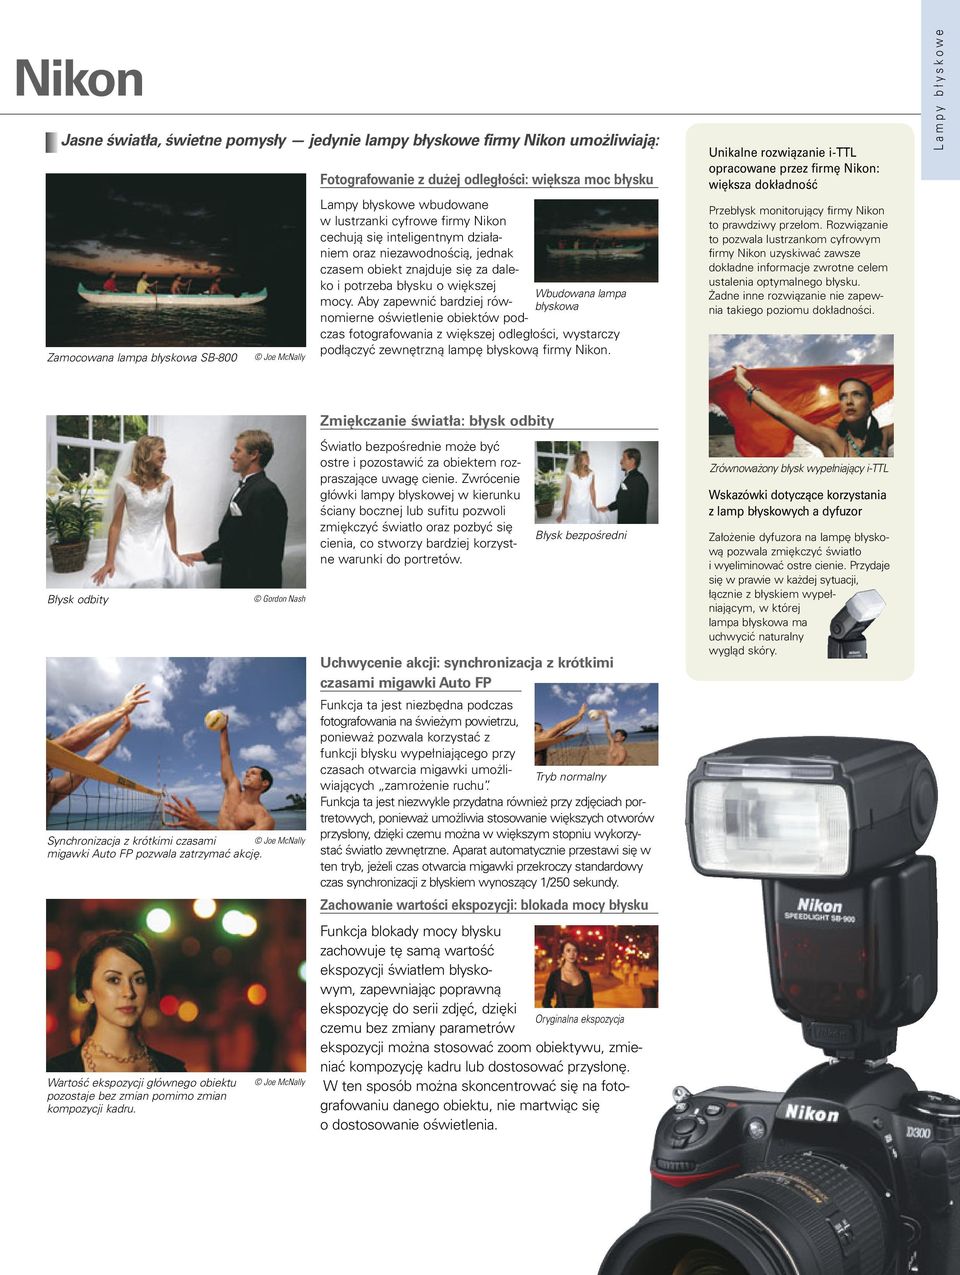 Aby zapewnić bardziej równomierne oświetlenie obiektów podczas fotografowania z większej odległości, wystarczy podłączyć zewnętrzną lampę błyskową firmy Nikon.